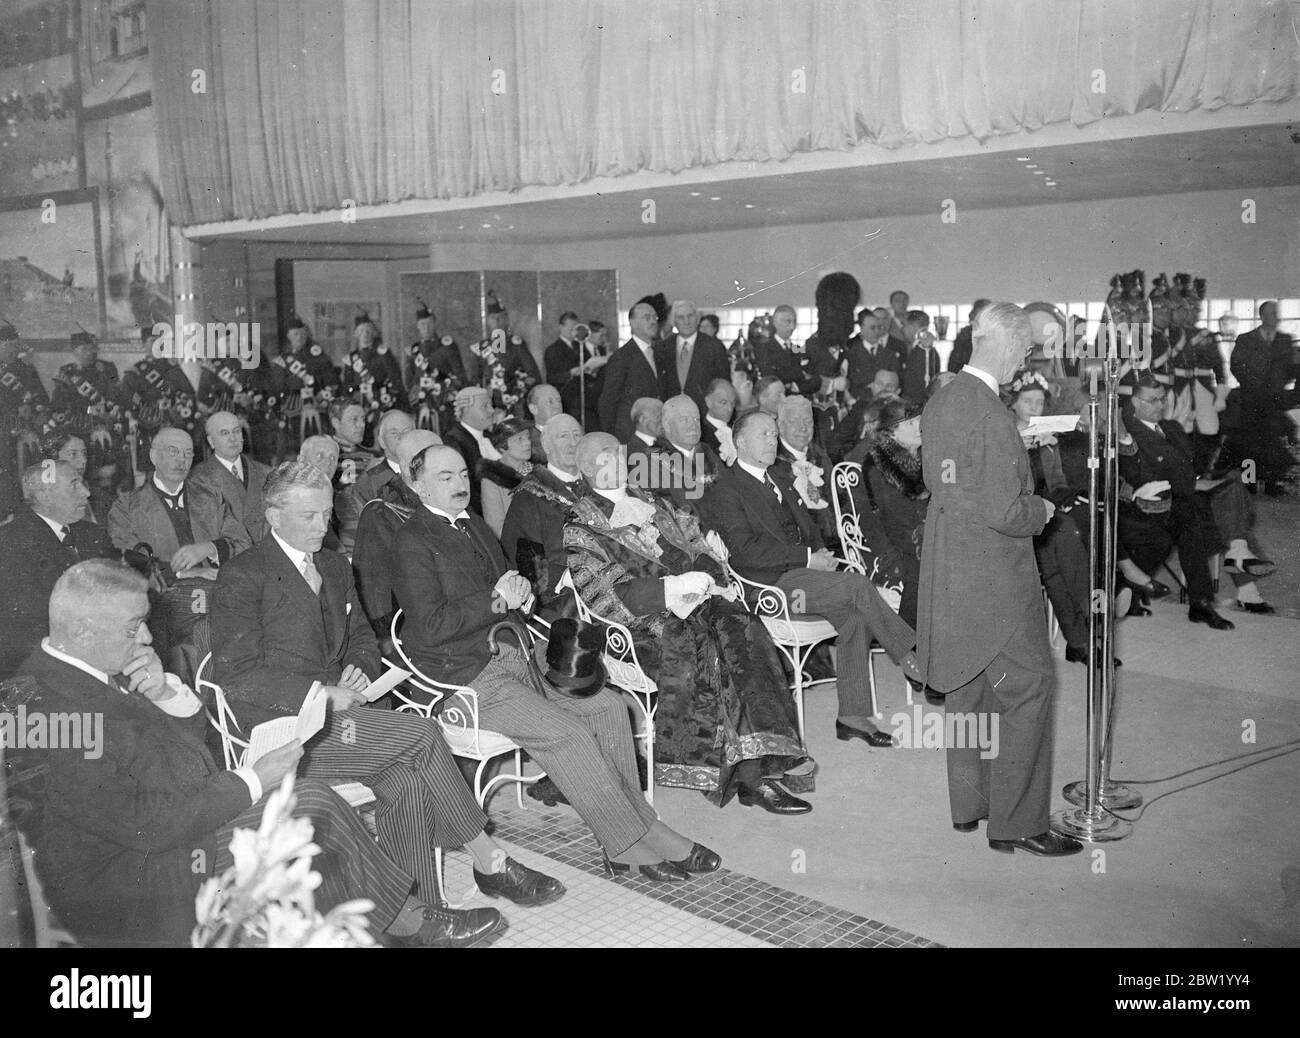 Le maire de Londres, Sir George Broadbridge, ouvre le pavillon britannique à l'exposition de Paris. 19. Juin 1937 Banque D'Images